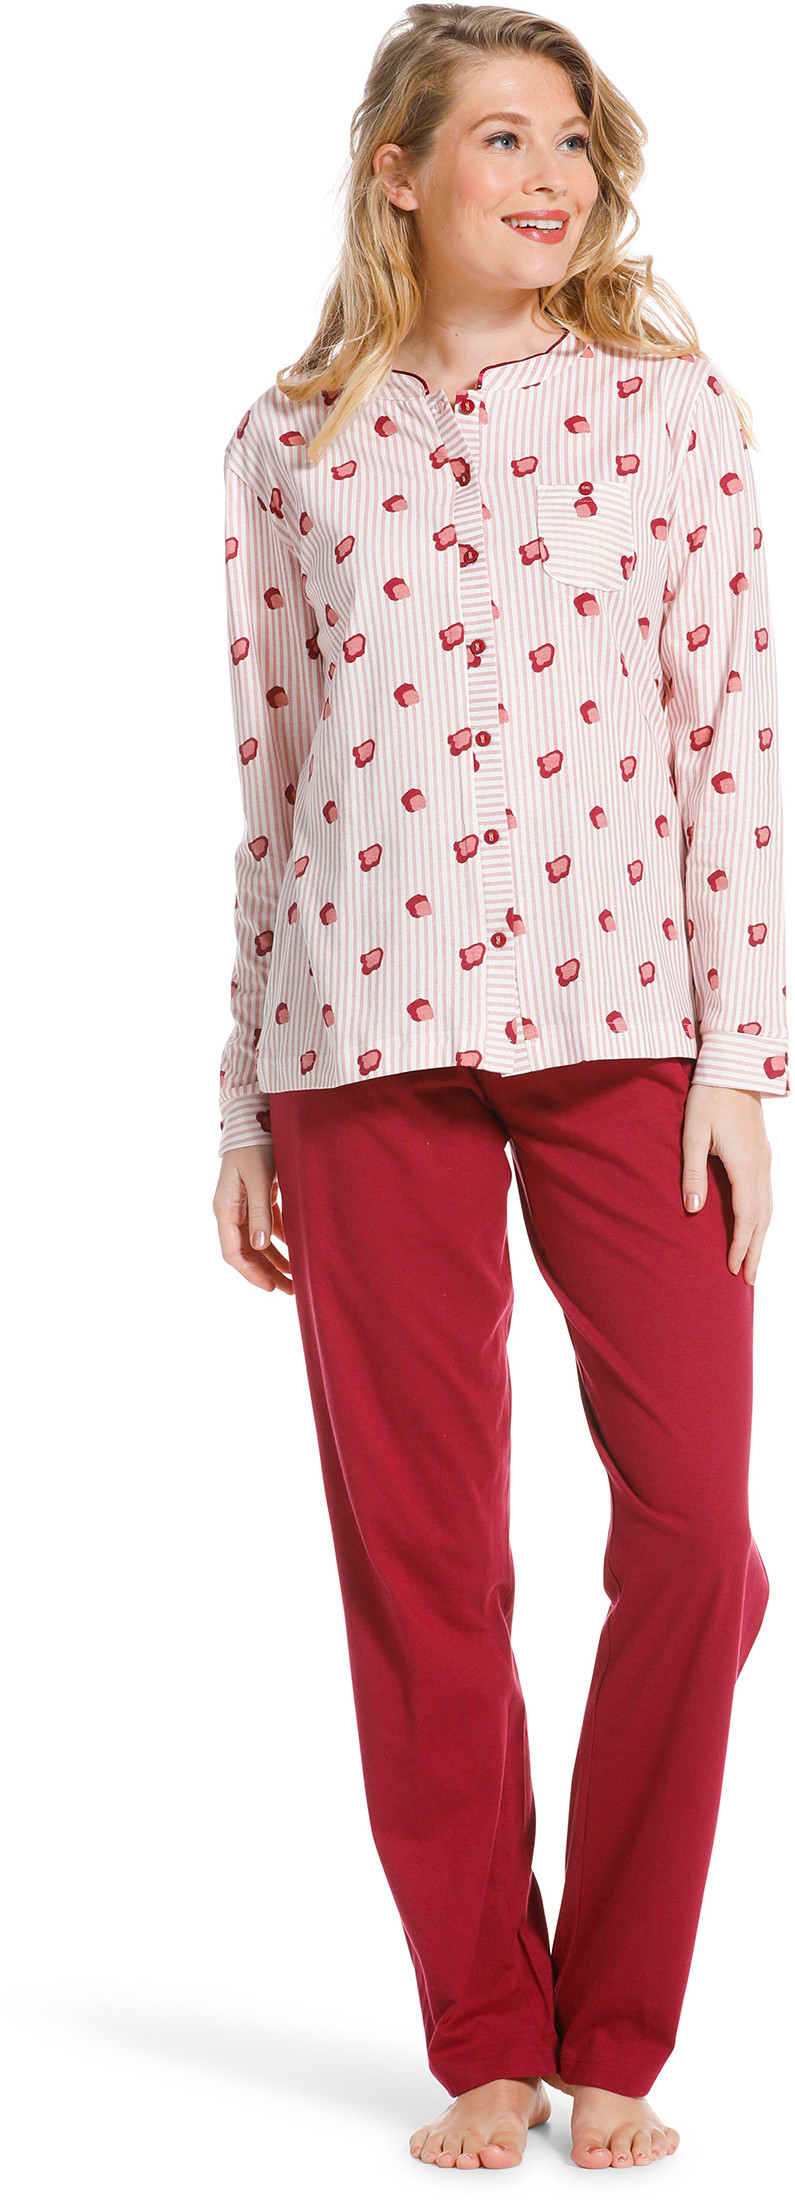 Pastunette doorknoop dames pyjama 20222-104-6-44